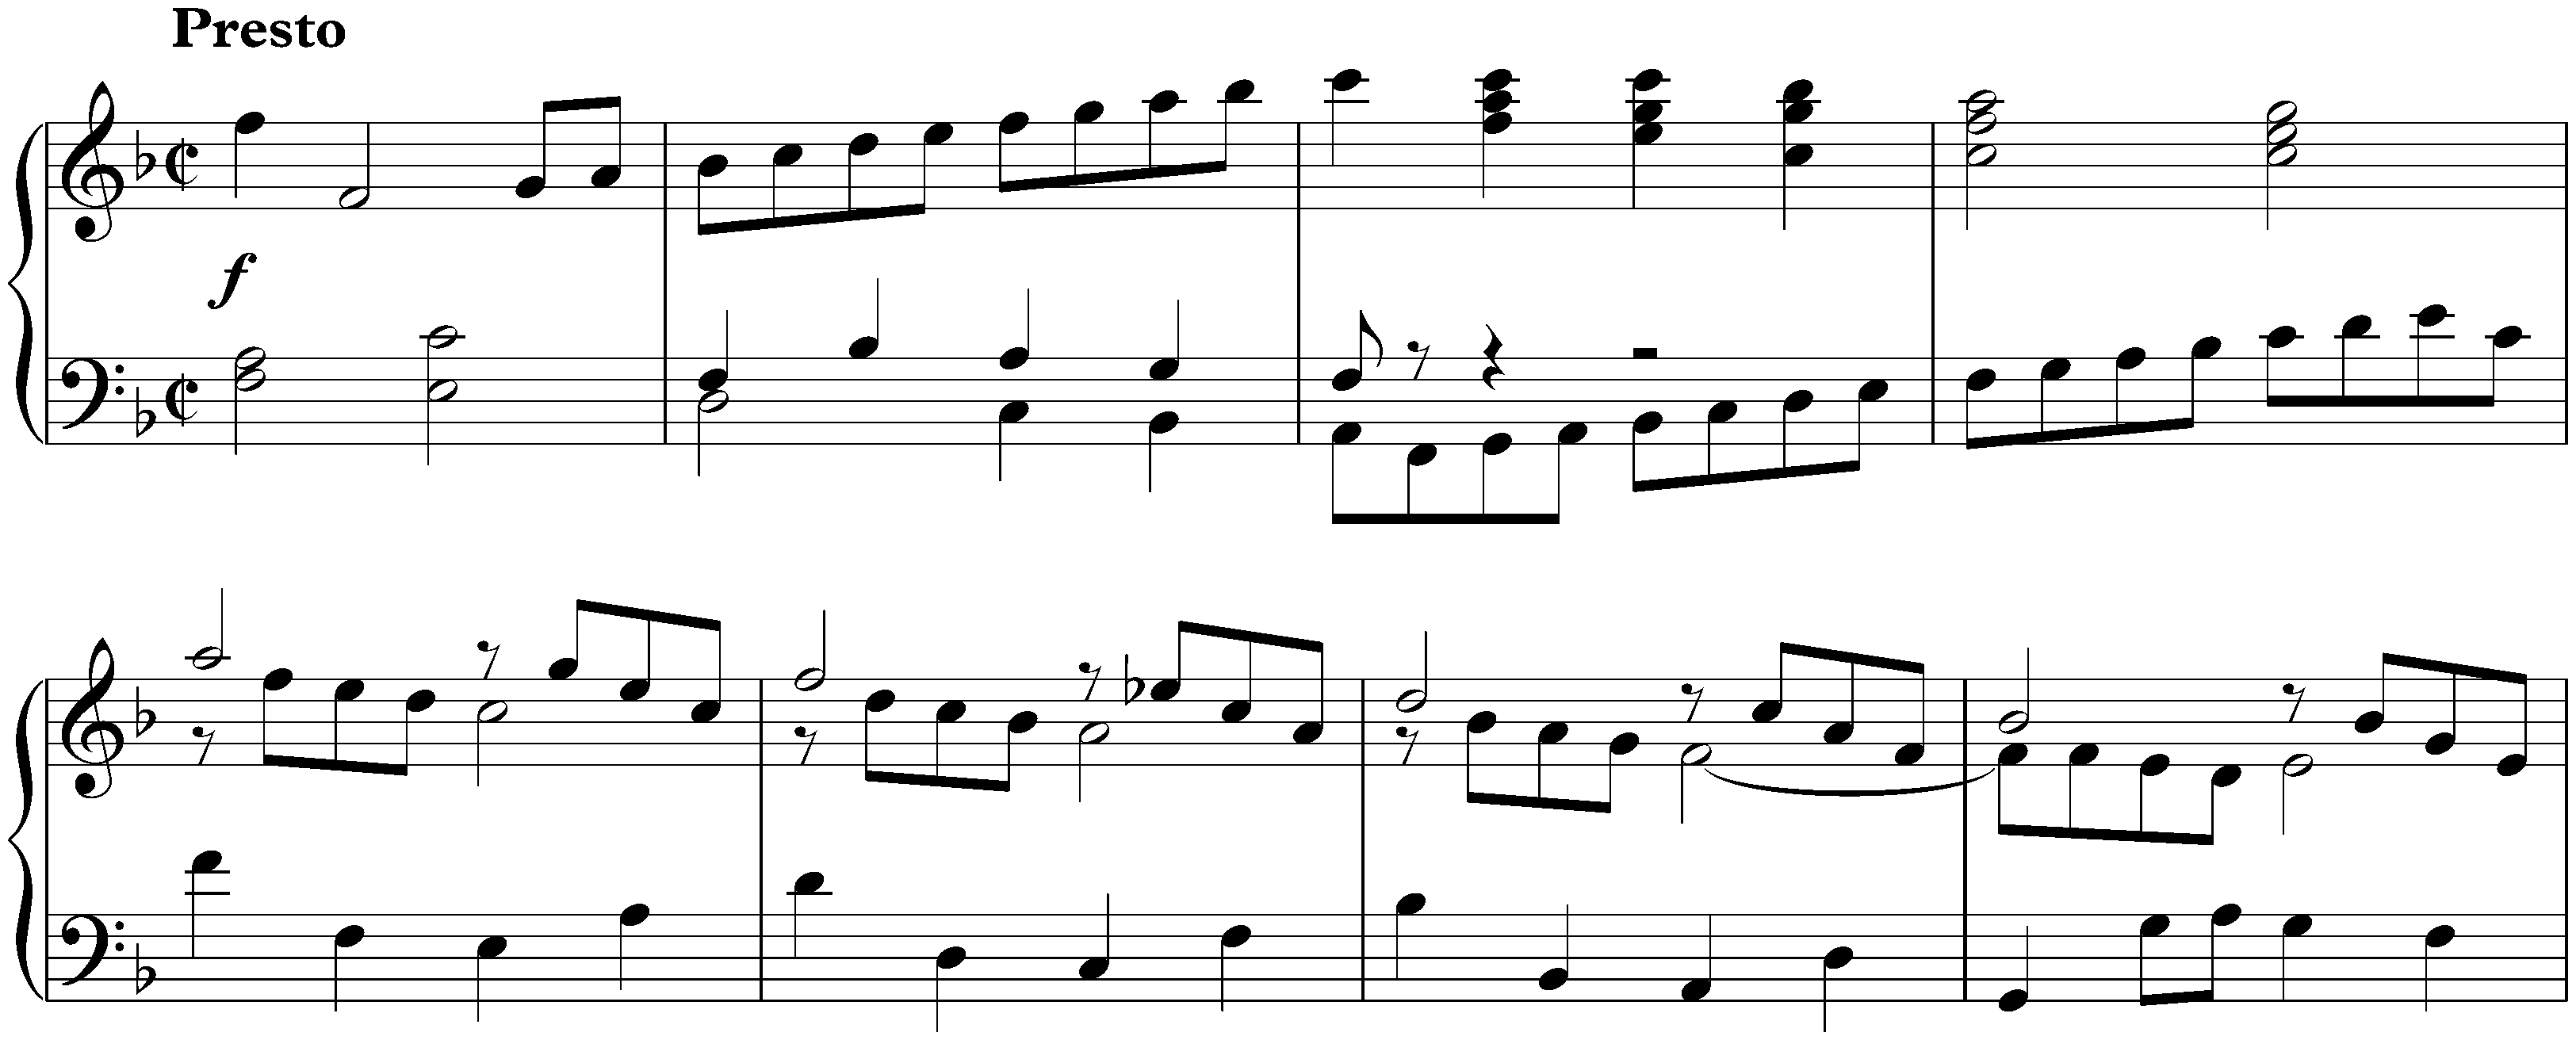 Italian Concerto in F major, BWV 971; 3. Presto